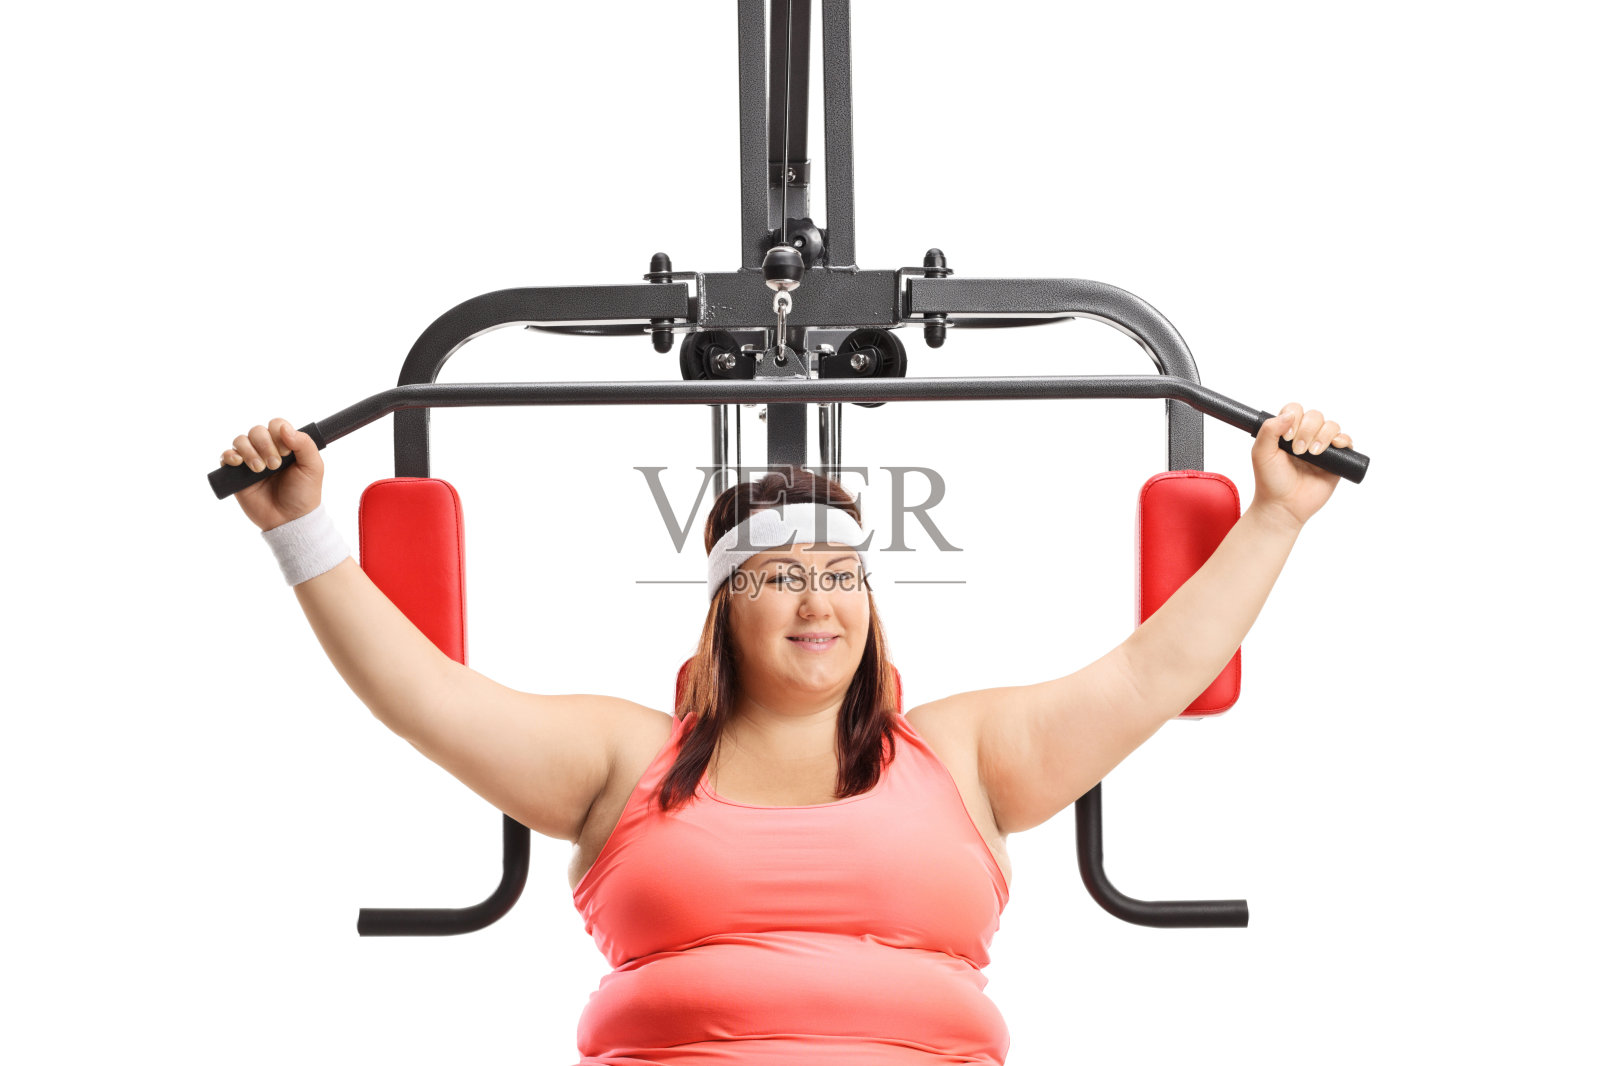 在机器上锻炼的超重女性照片摄影图片